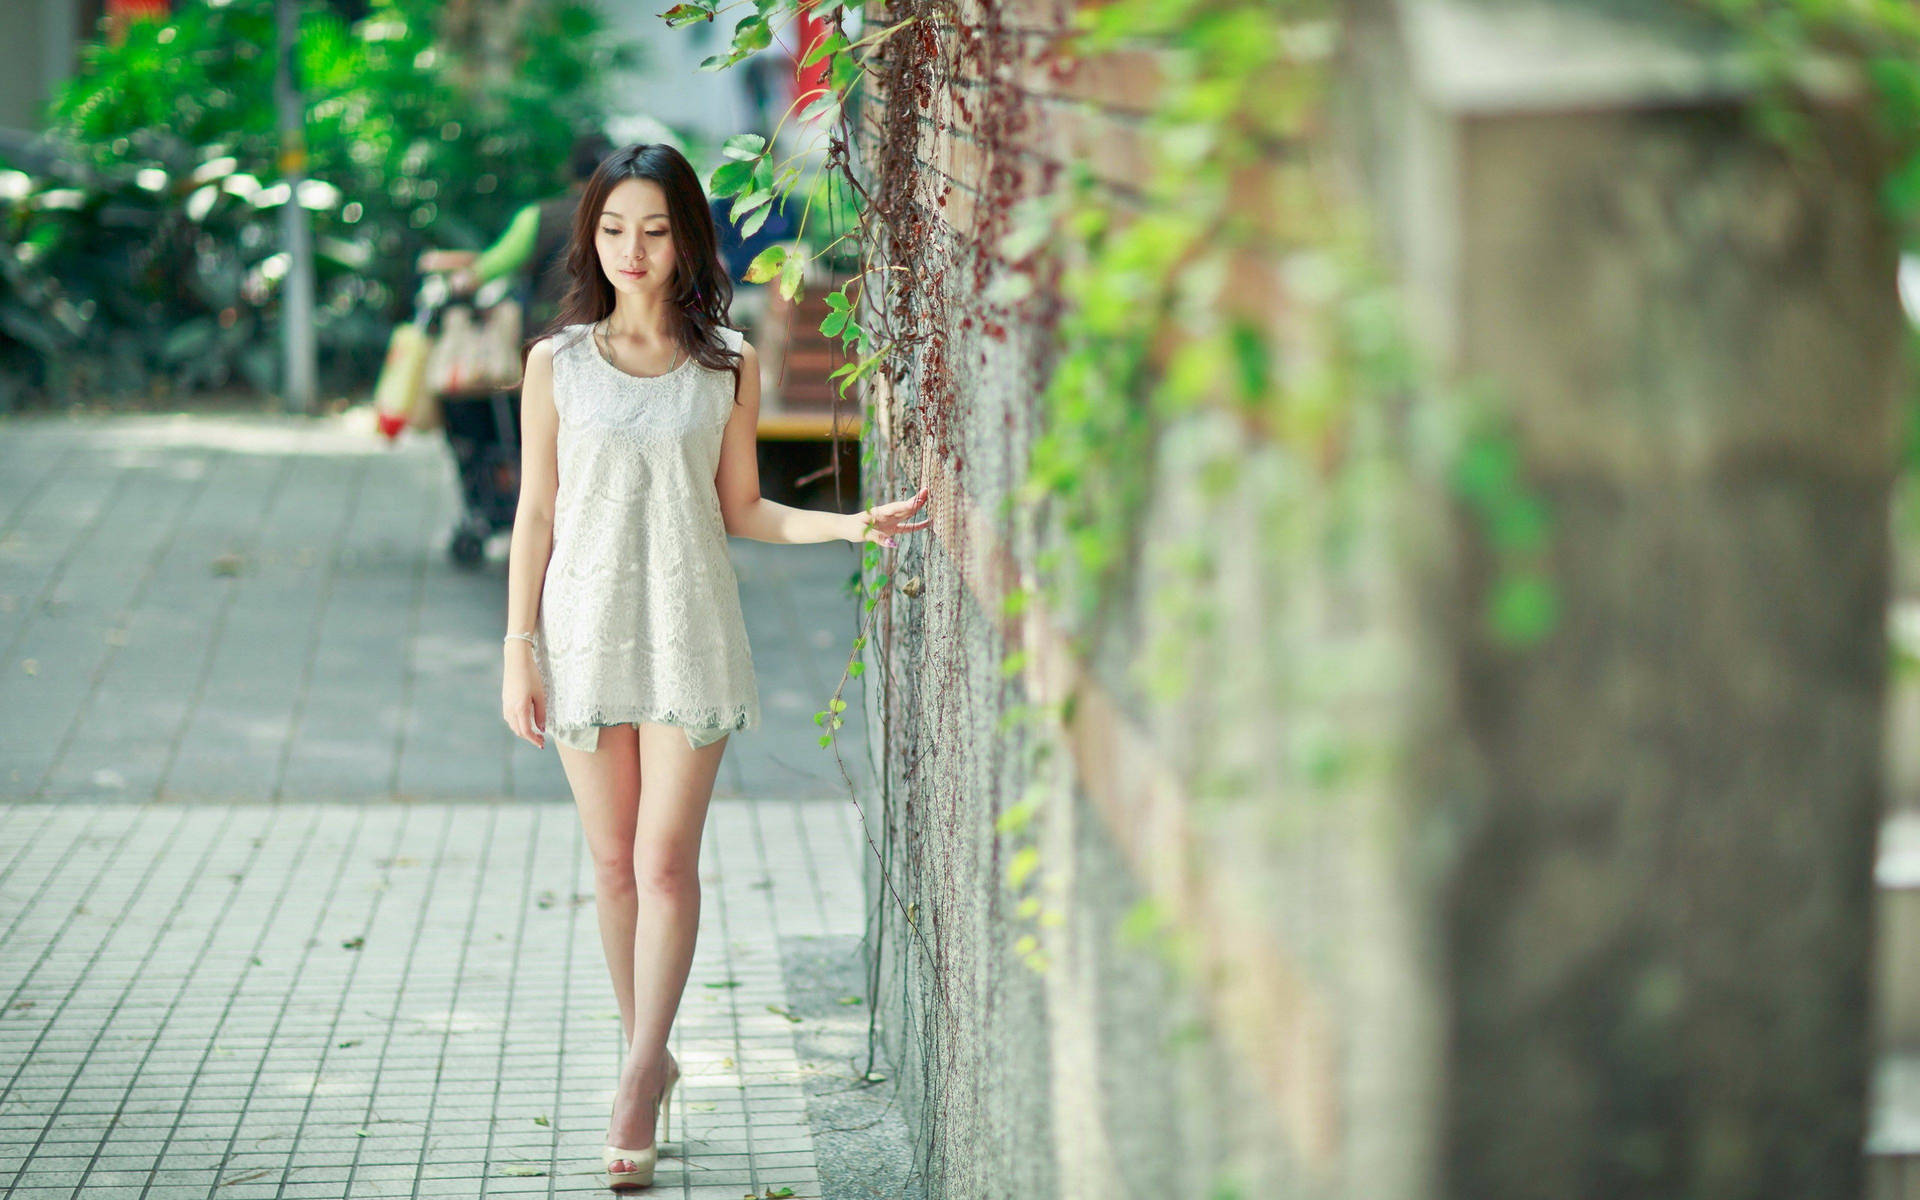 Korean Girl Walking Down The Street Wallpaper